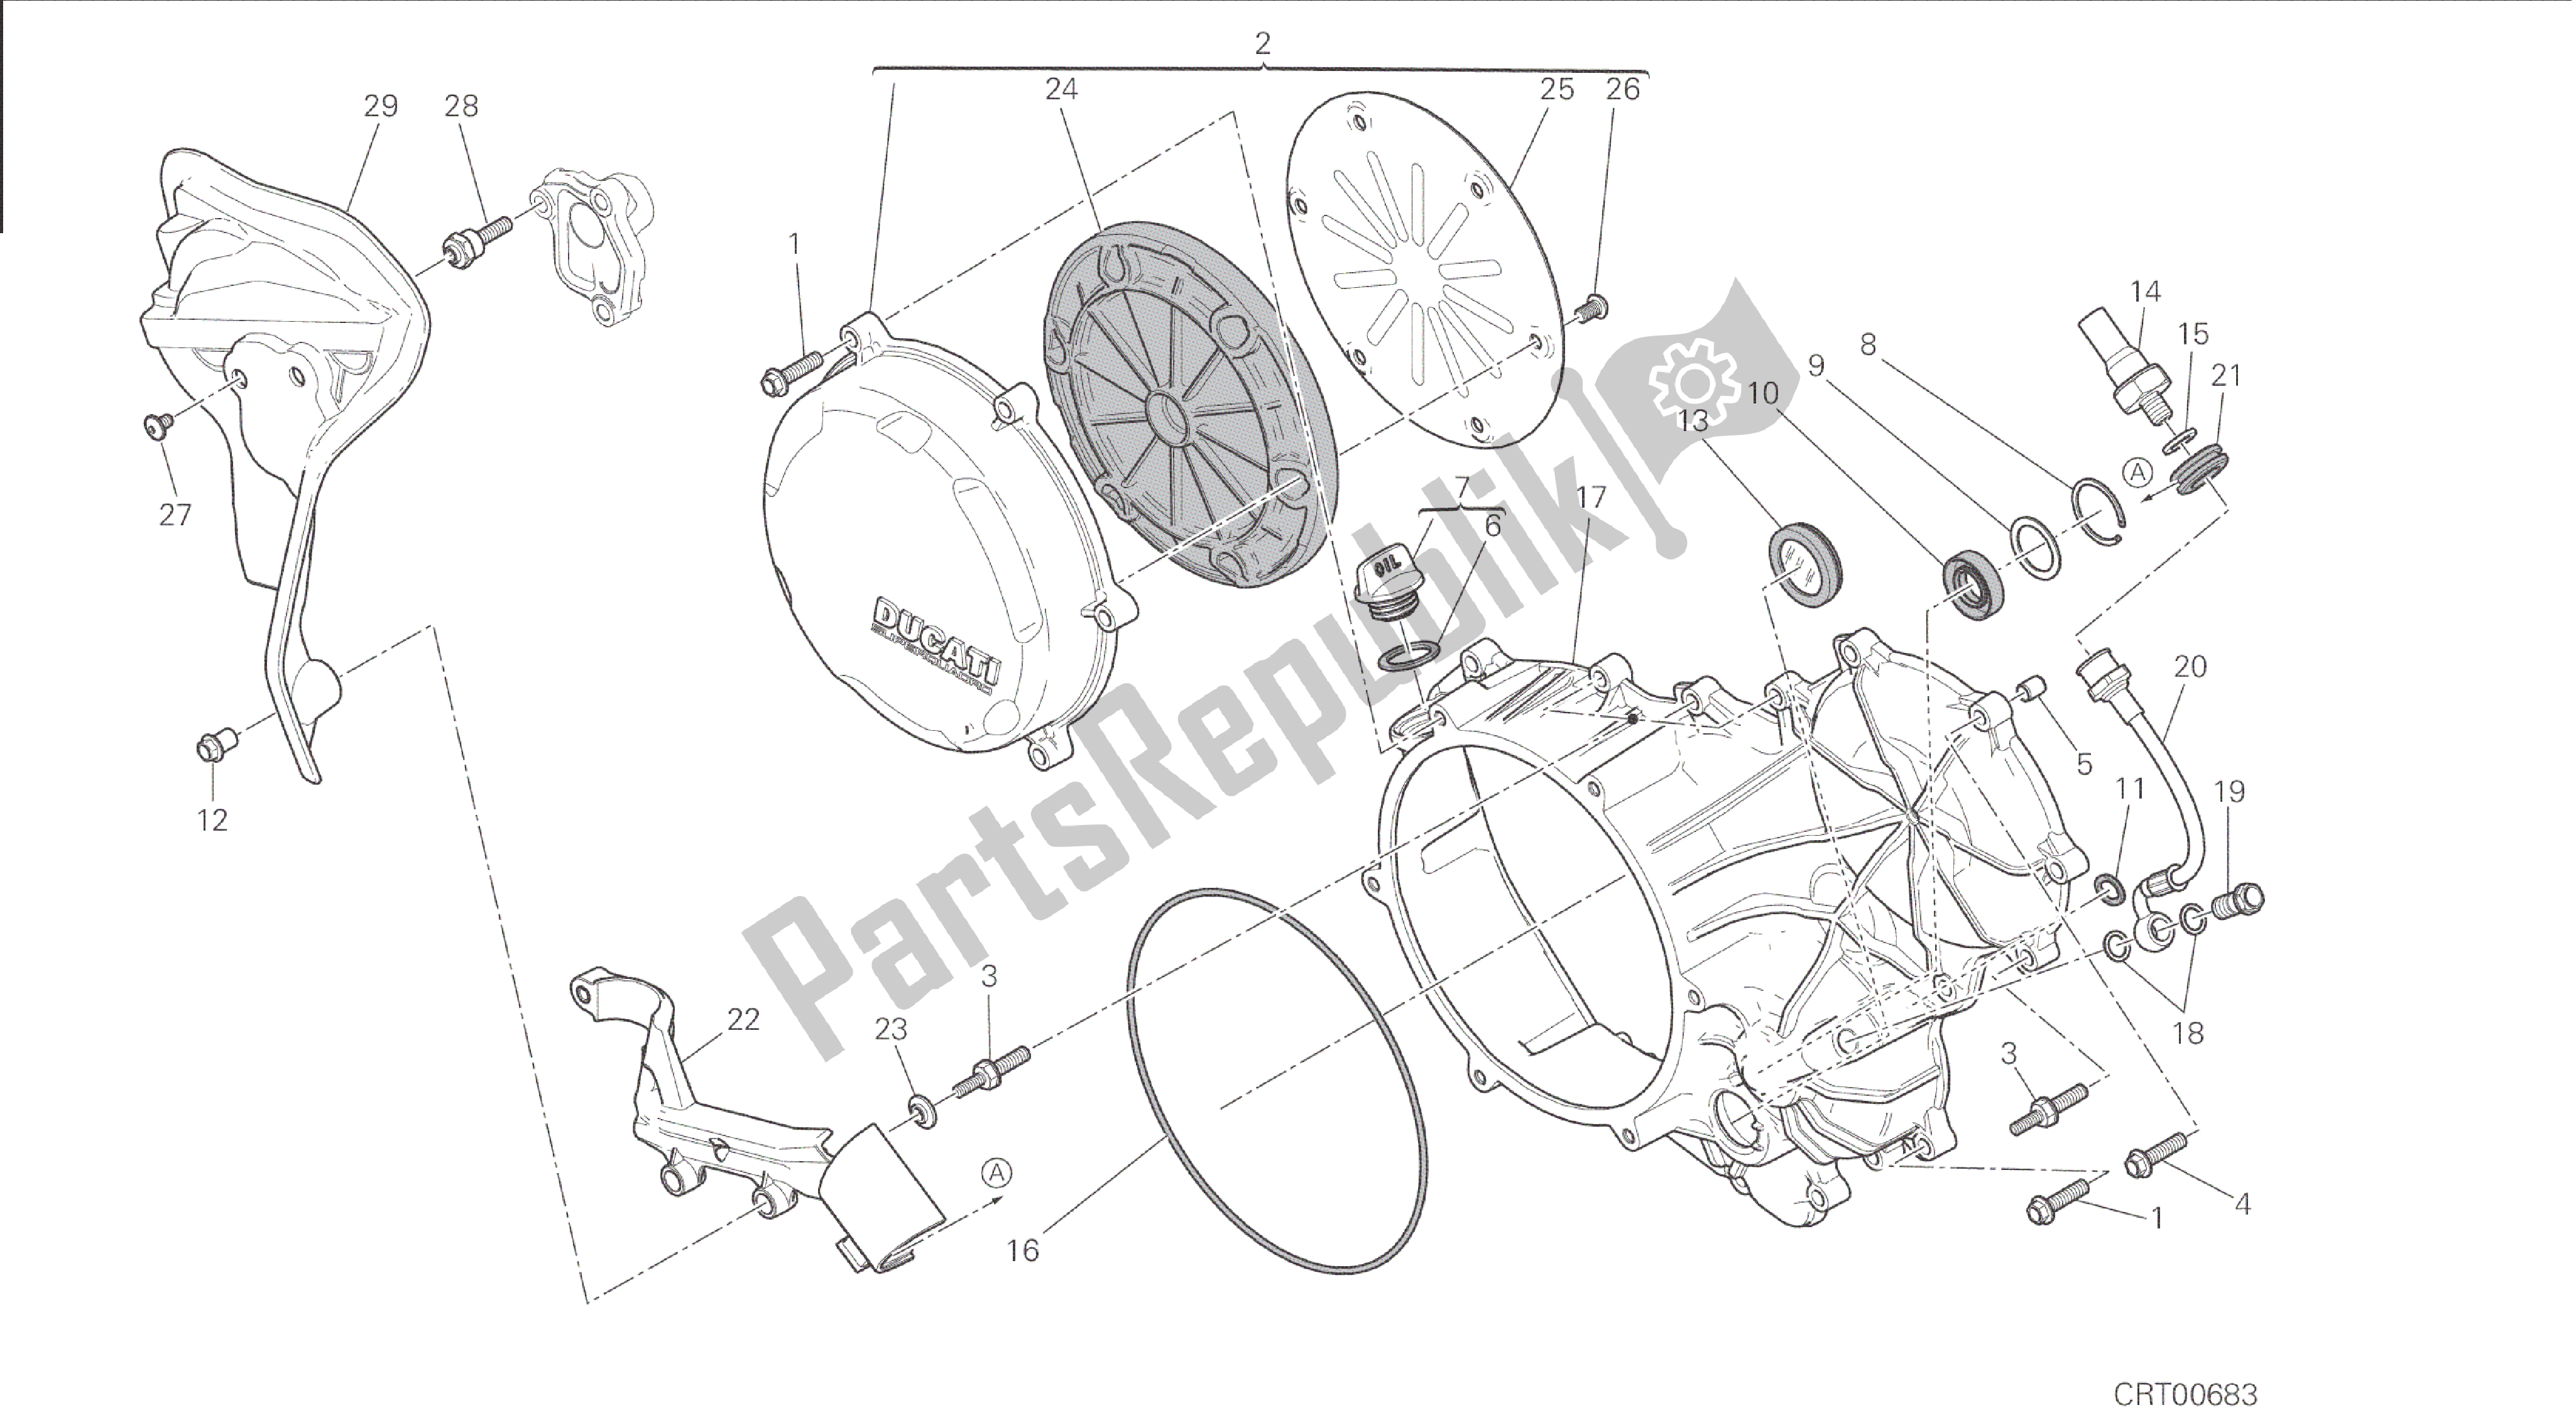 Toutes les pièces pour le Dessin 005 - Embrayage - Carter De Carter Latéral [mod: 1199r; Xst: Aus, Eur, Fra, Jap, Twn] Group Engine du Ducati Panigale 1198 2015